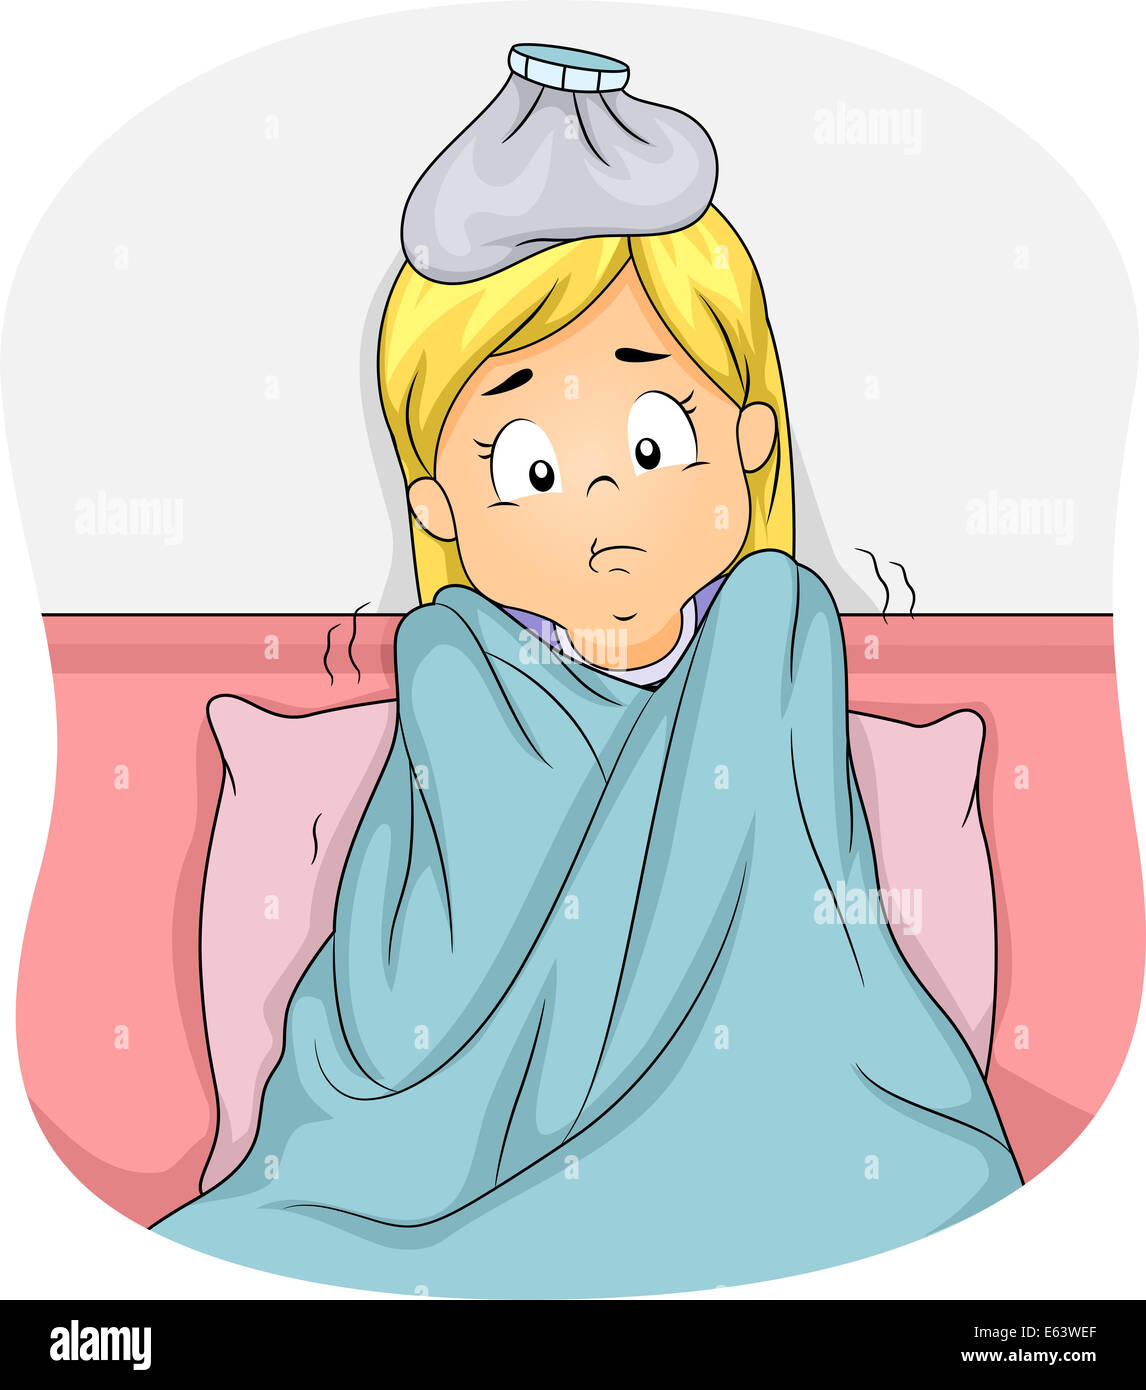 Ilustración de una chica acostada en la cama debido a la fiebre Foto de stock